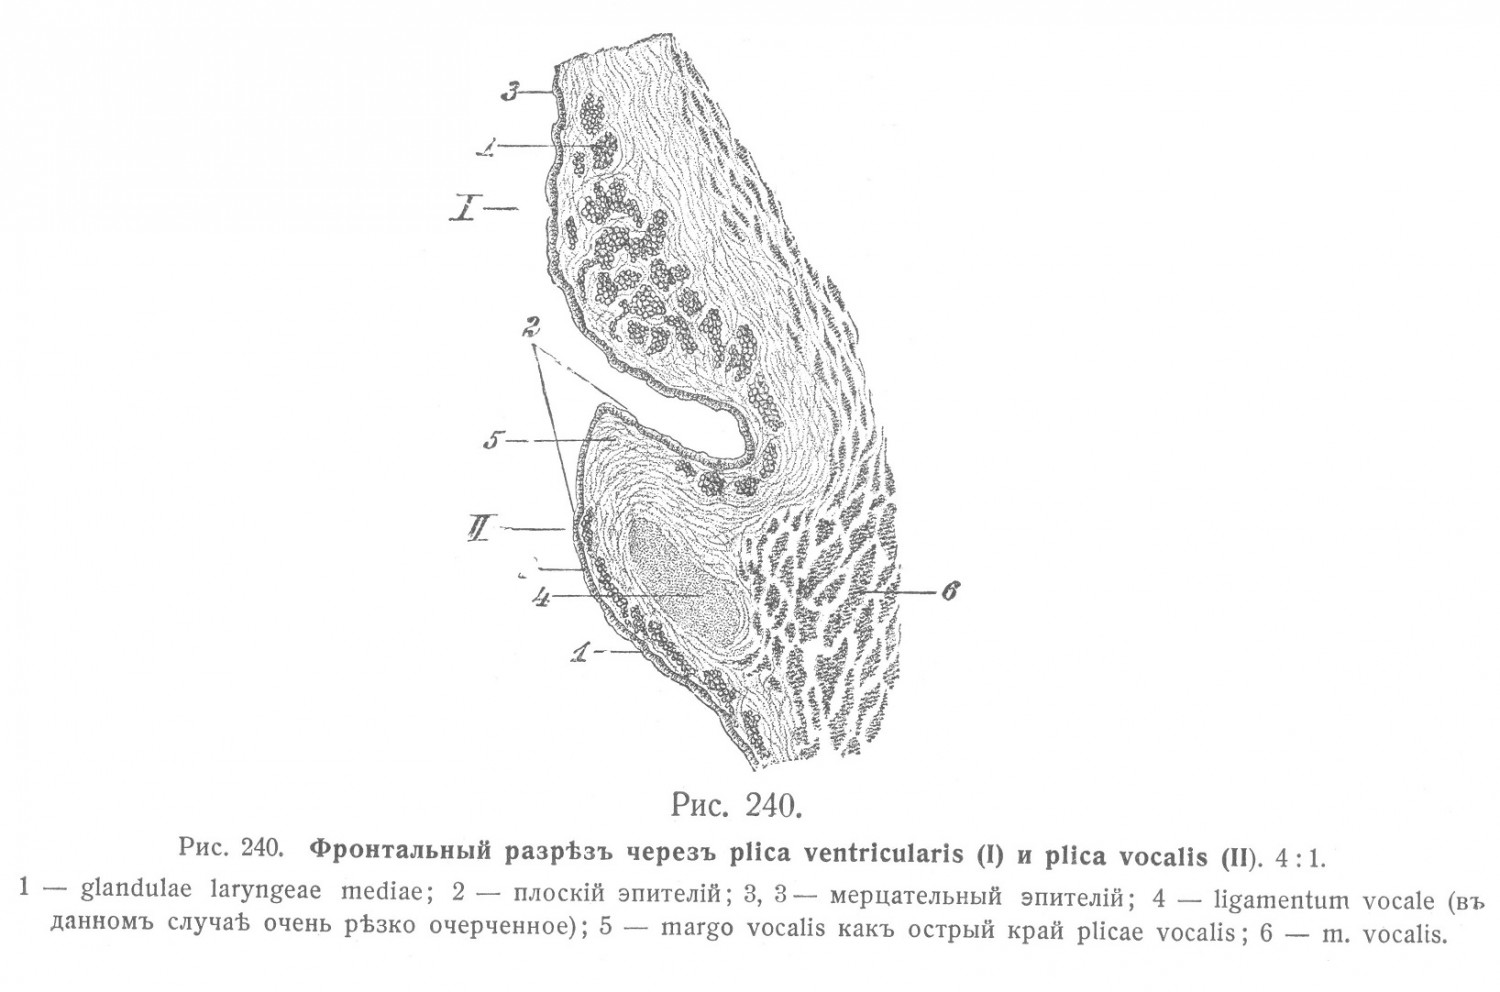 Фронтальный разрез через plica ventricularis и plica vocalis